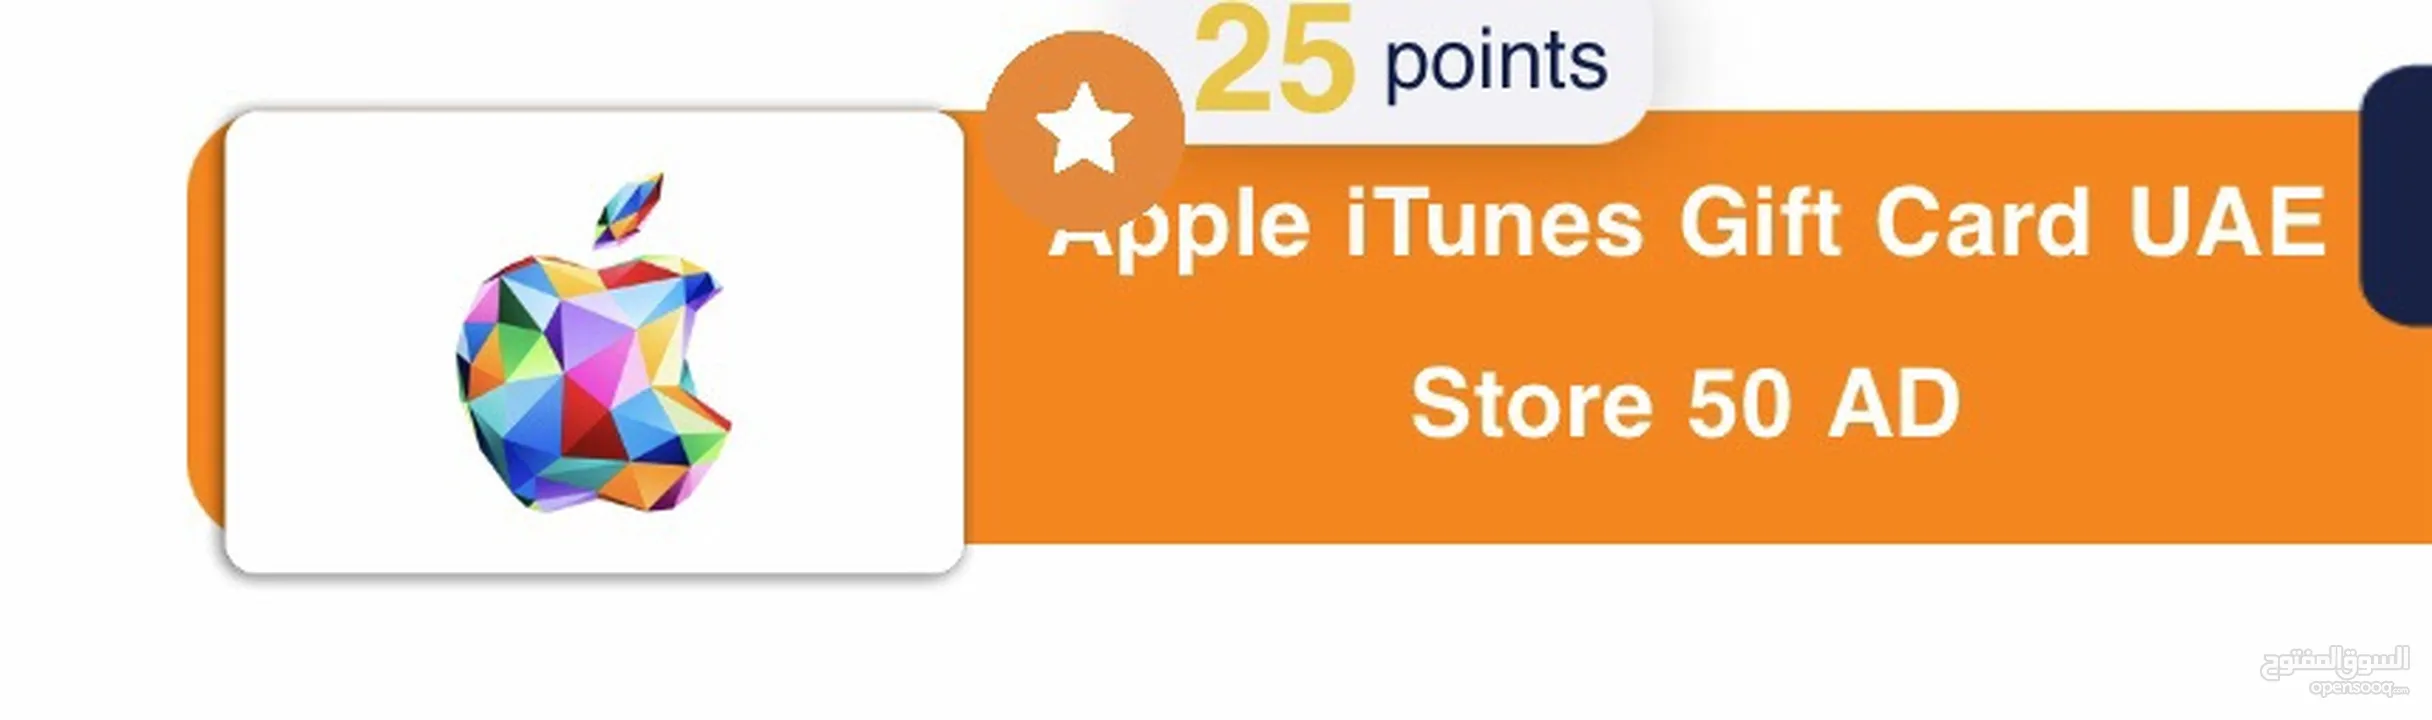 ايتتونز ابل اماراتي  Apple iTunes